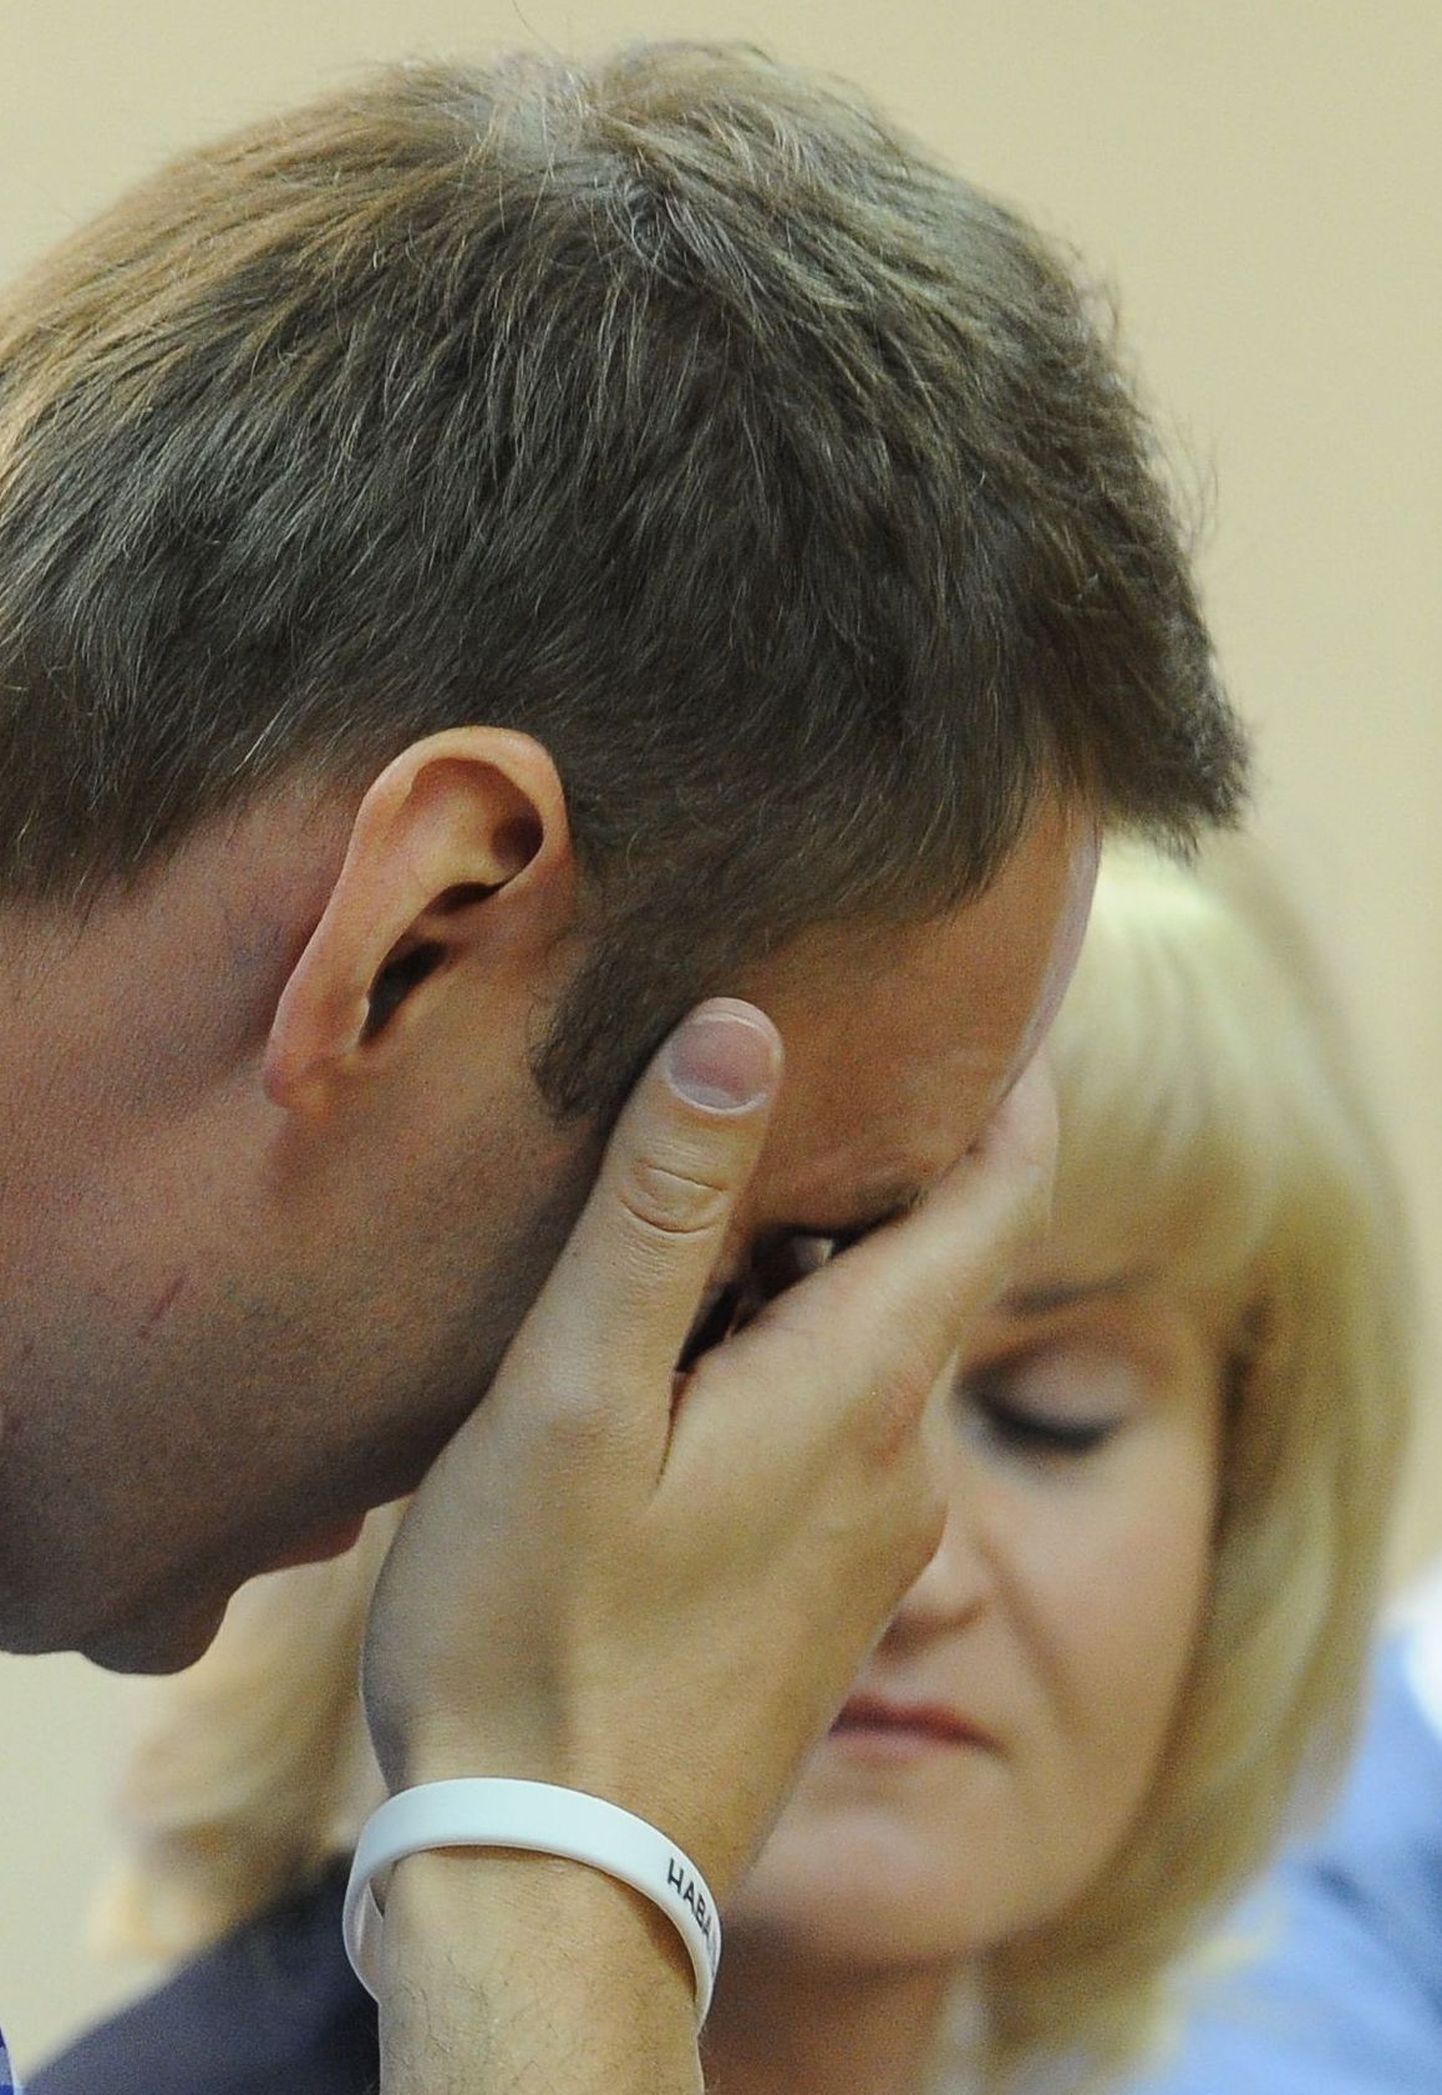 Aleksei Navalnõi täna kohtus.